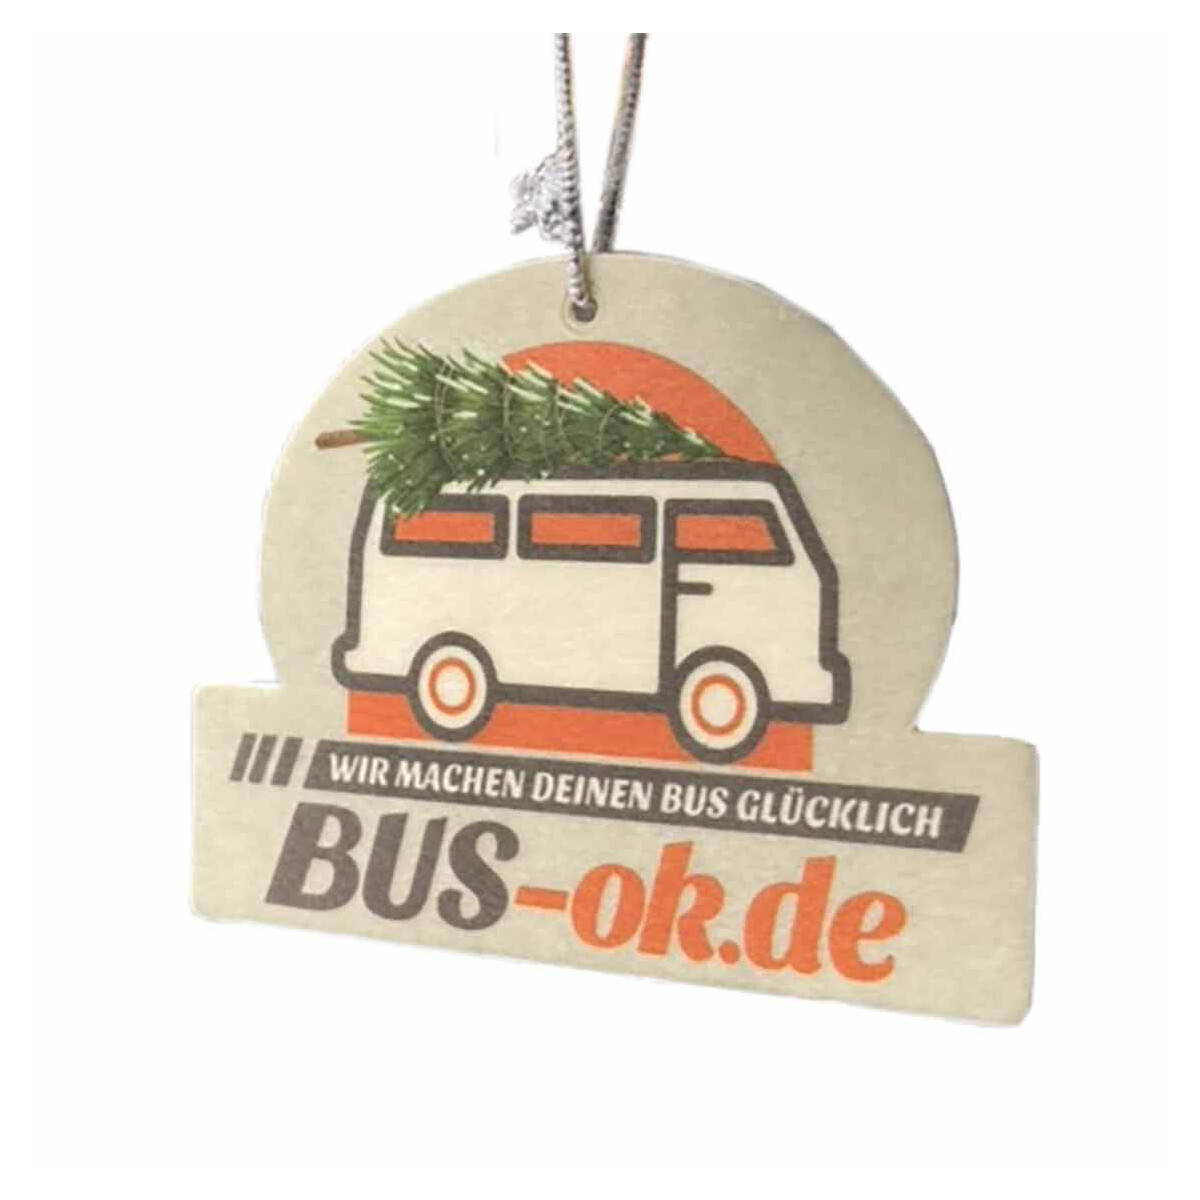 Duftbaum Winter-Edition Bus mit Weihnachtsbaum auf dem Dach - BUS-ok., 2,55  €